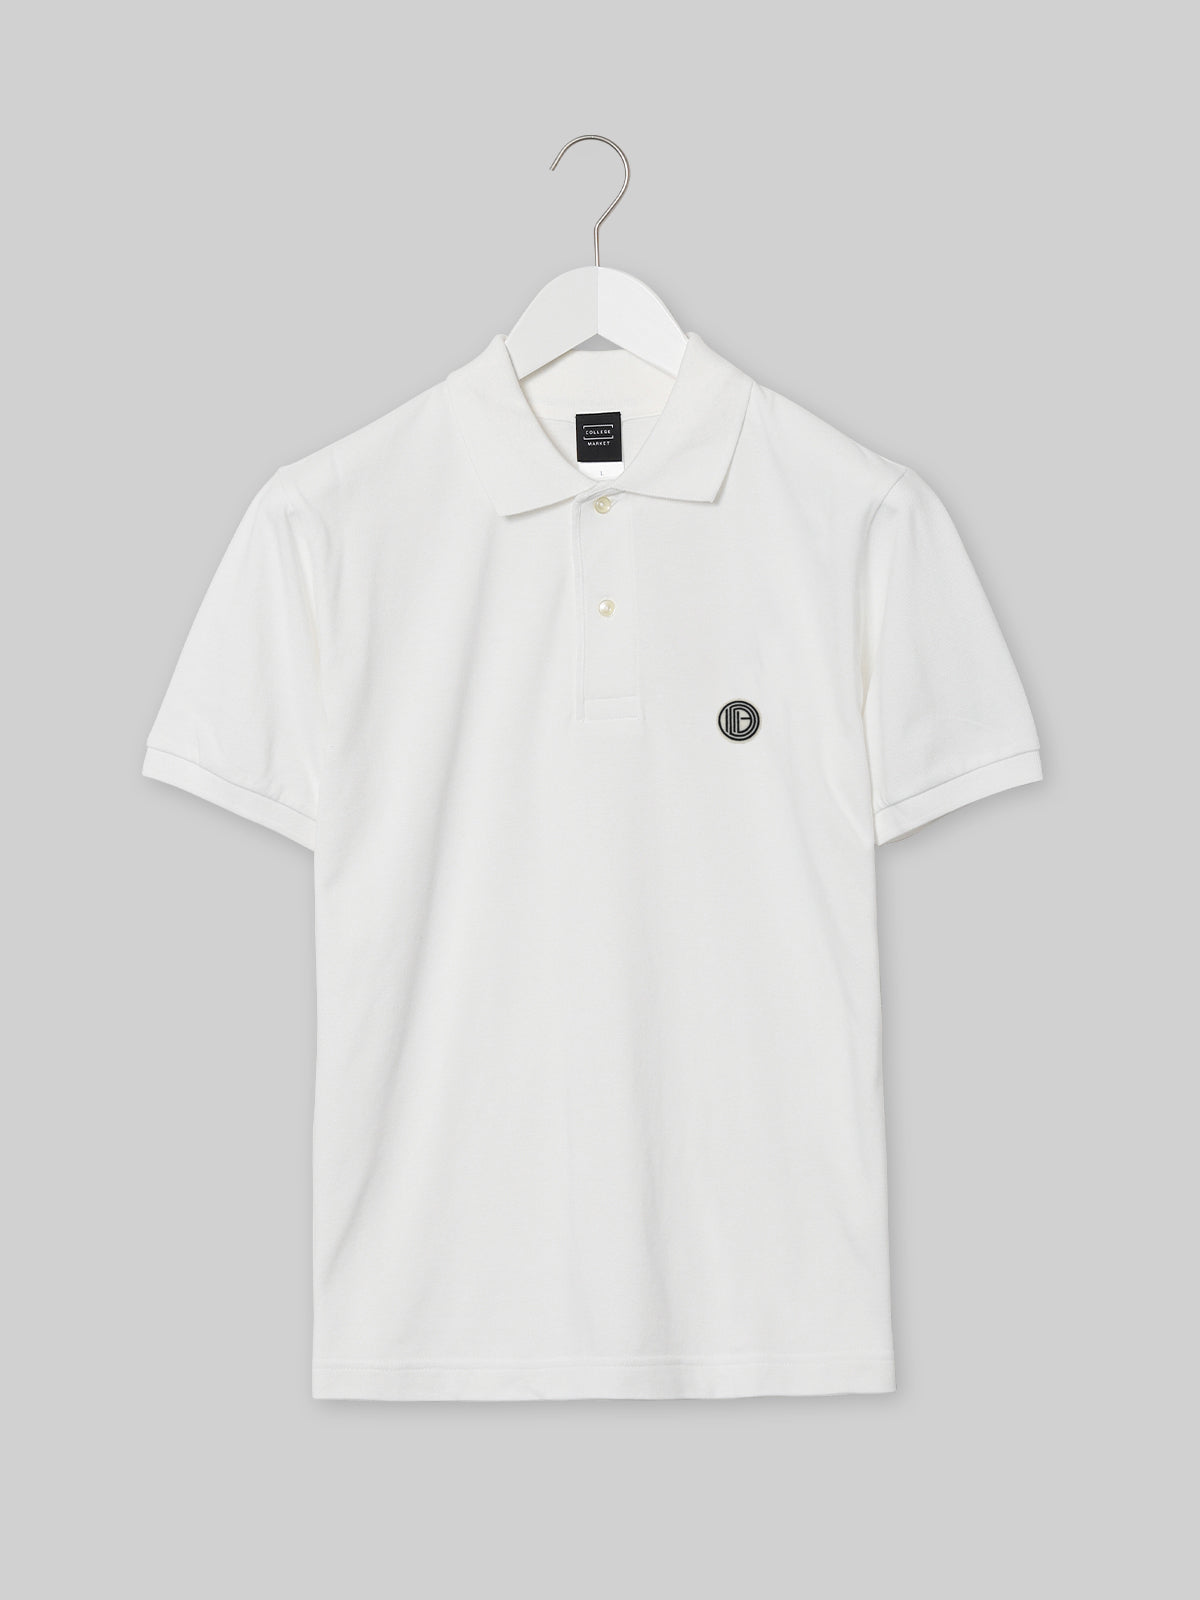 OIDAI ヘビーウェイトコットンポロシャツ サークルロゴ ホワイト